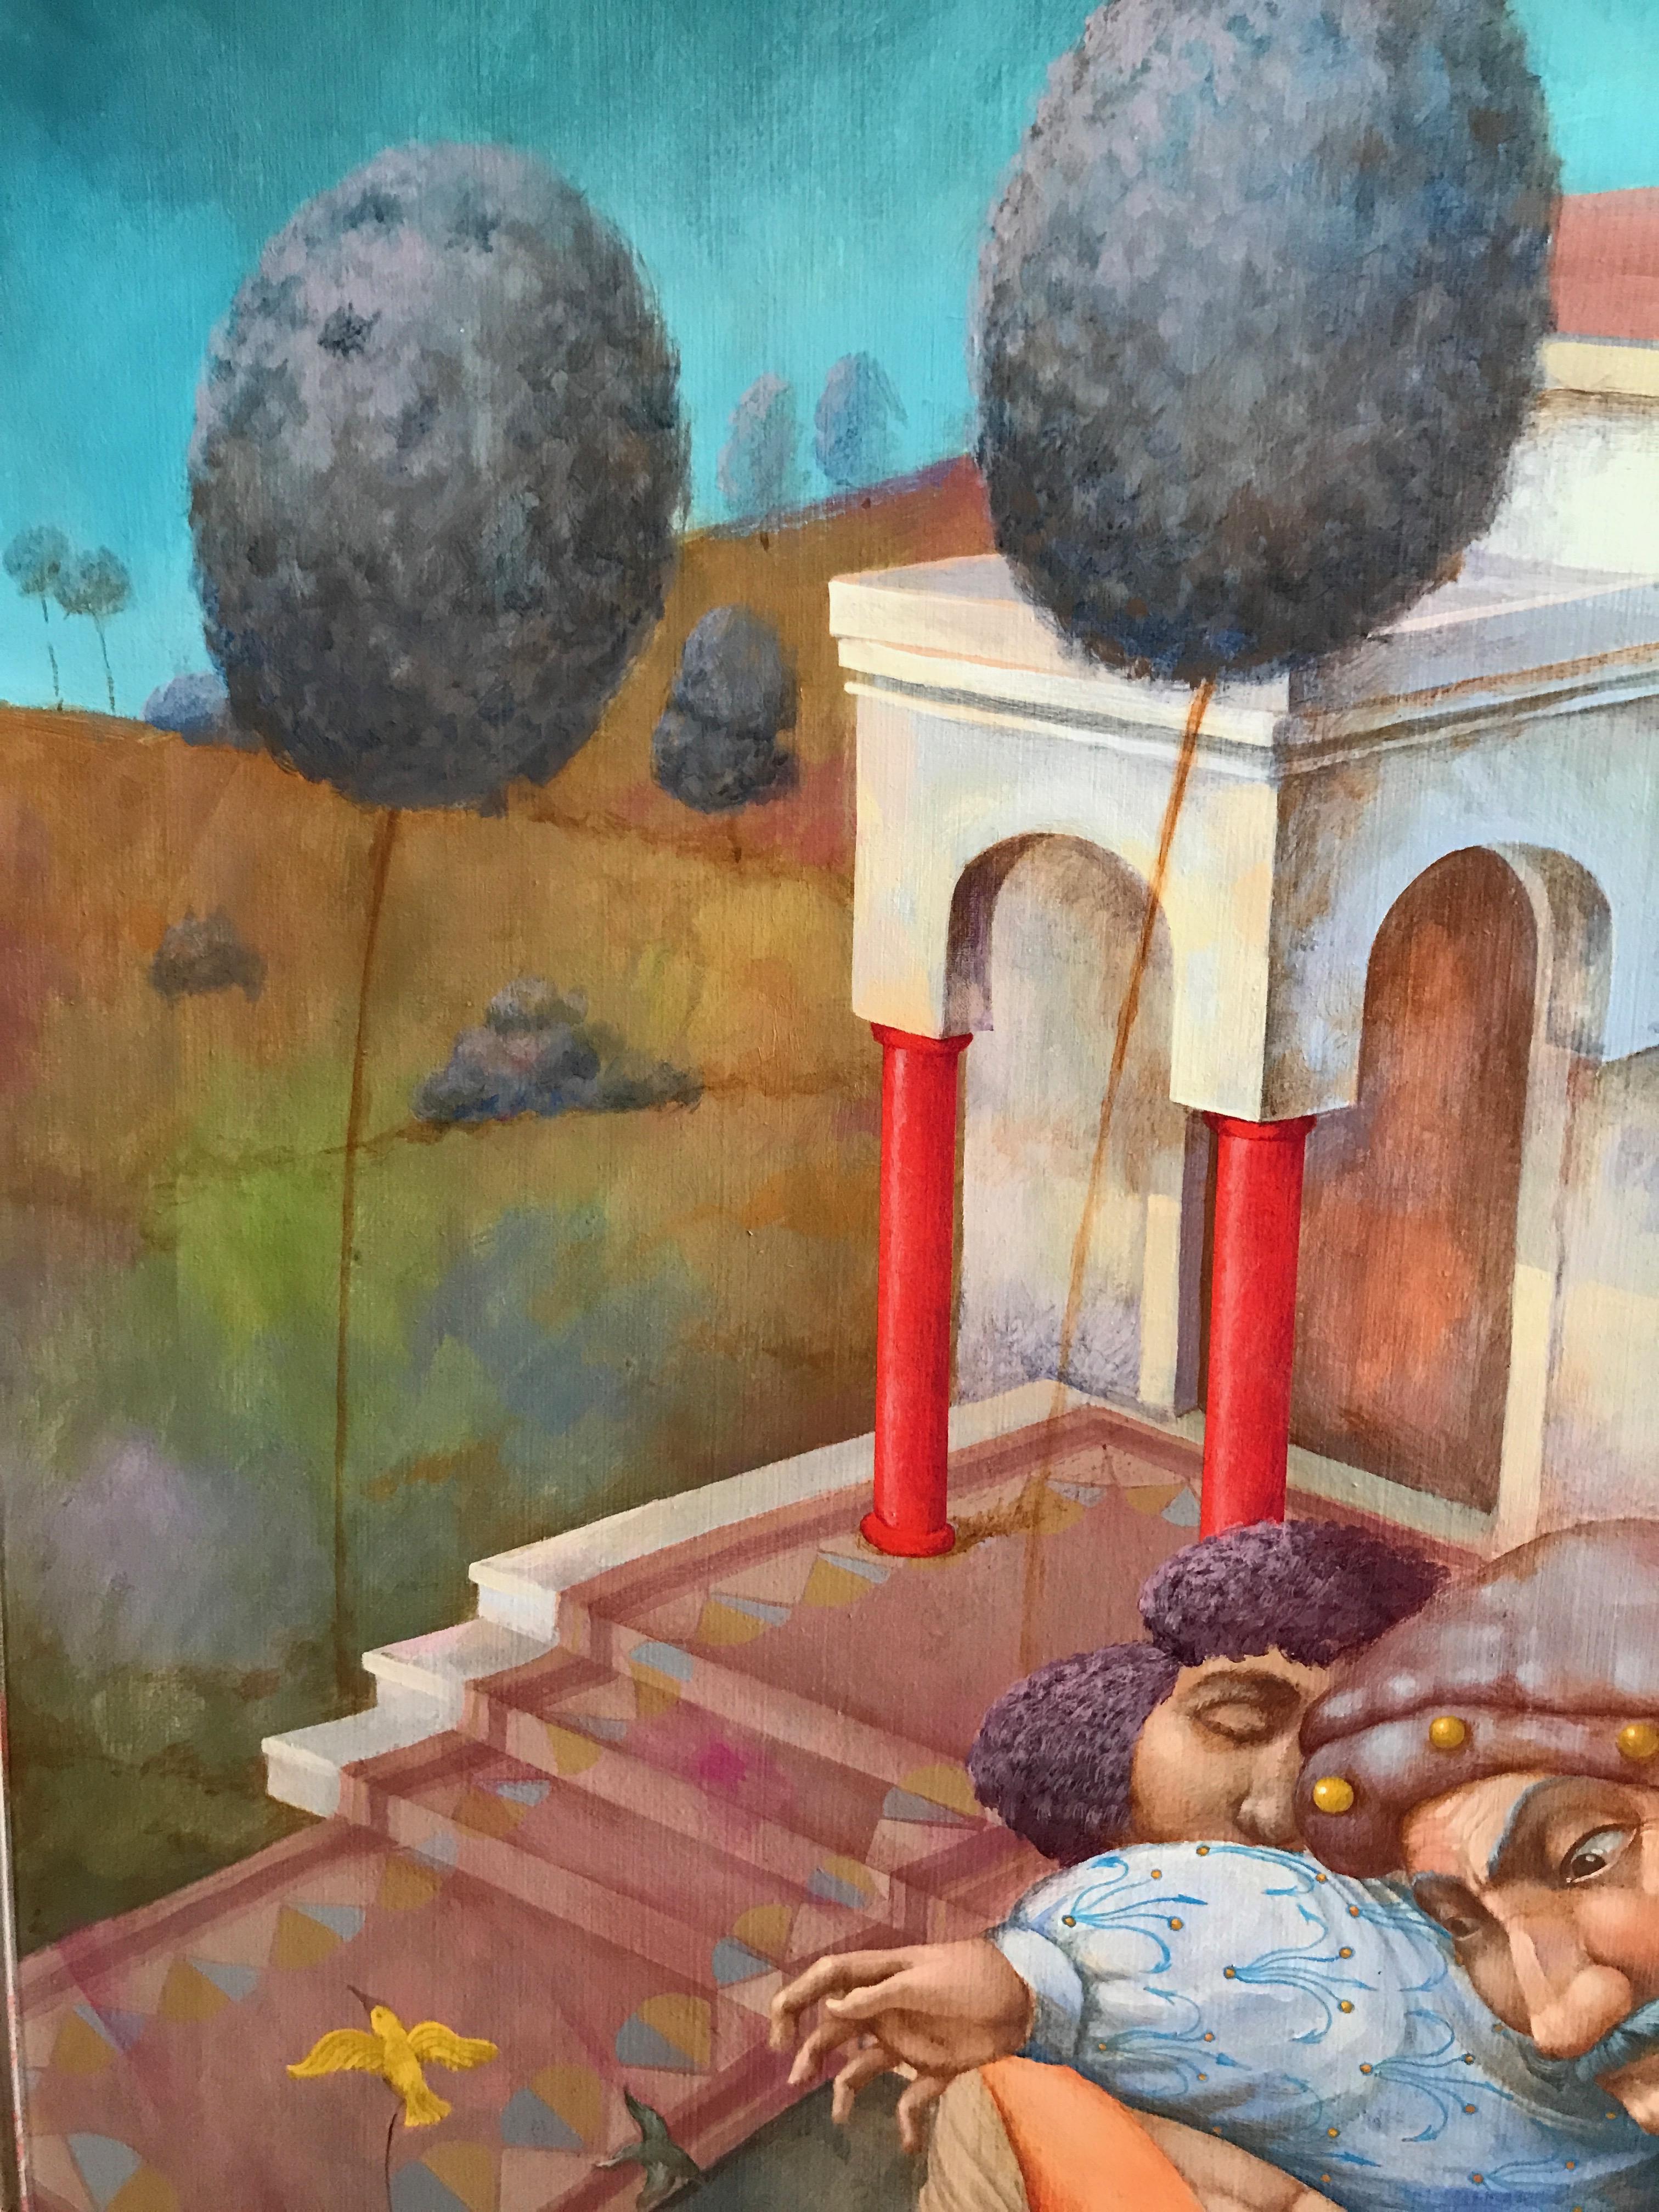 Kostacis mit seinen Kolibris. Figürliche Volksszene in Renaissance-Atmosphäre.
Acryl auf Leinwand.
Abmessungen in Zentimetern 81 x 100 x 2 cm. Gerahmt 105 x 124 x 5 cm.
Abmessungen in Zoll: 31.89 x 39.37 x 0.79 